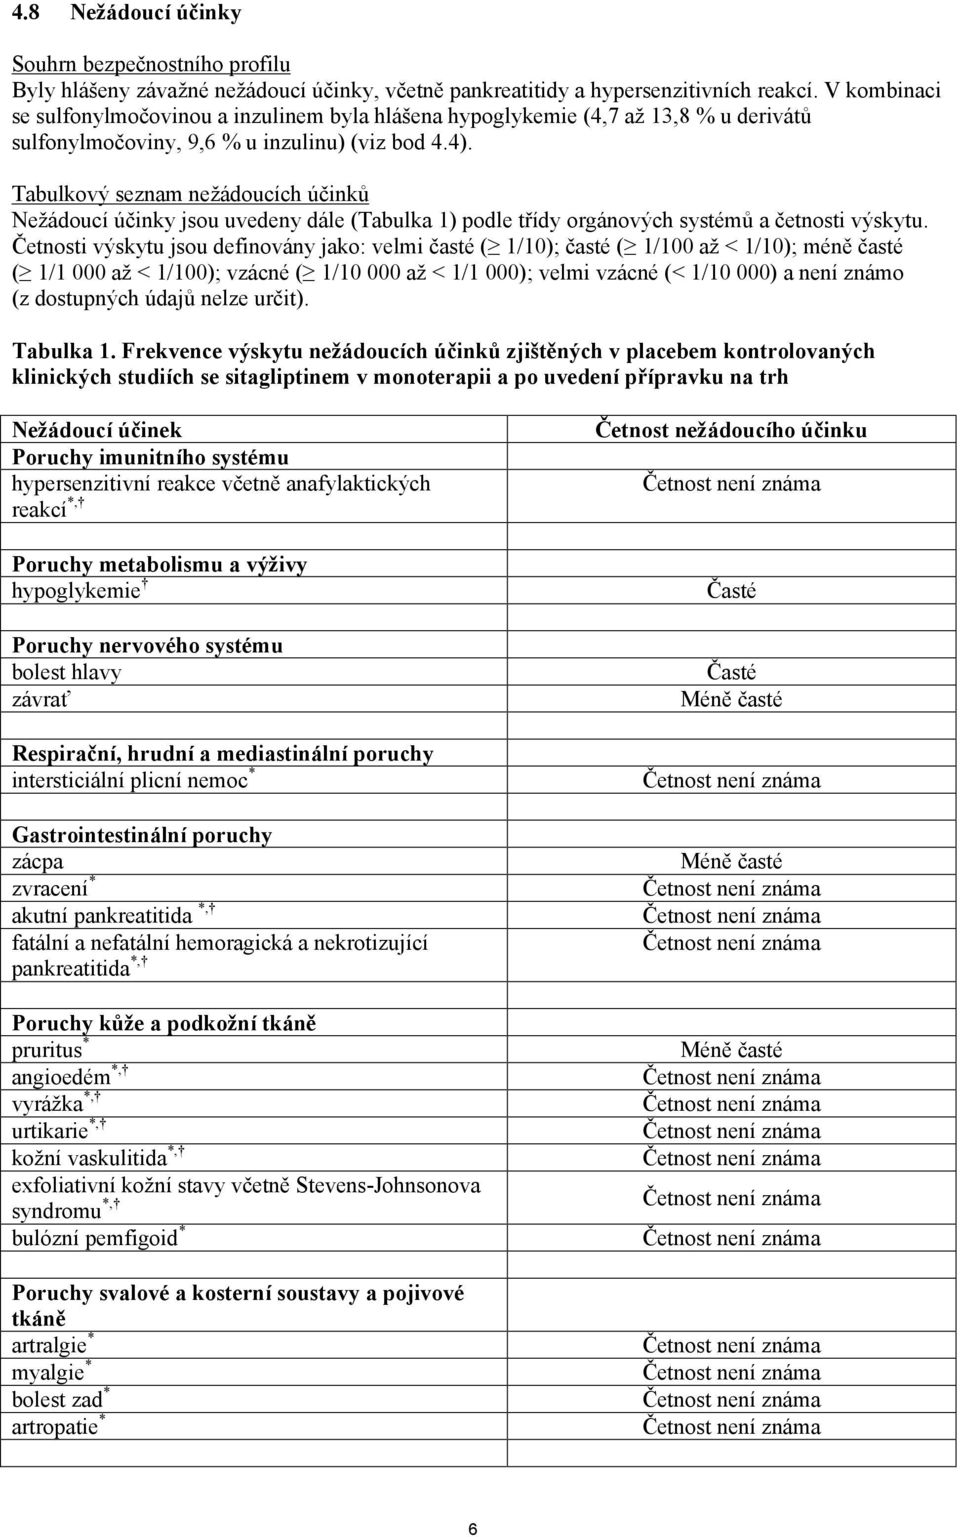 Tabulkový seznam nežádoucích účinků Nežádoucí účinky jsou uvedeny dále (Tabulka 1) podle třídy orgánových systémů a četnosti výskytu.